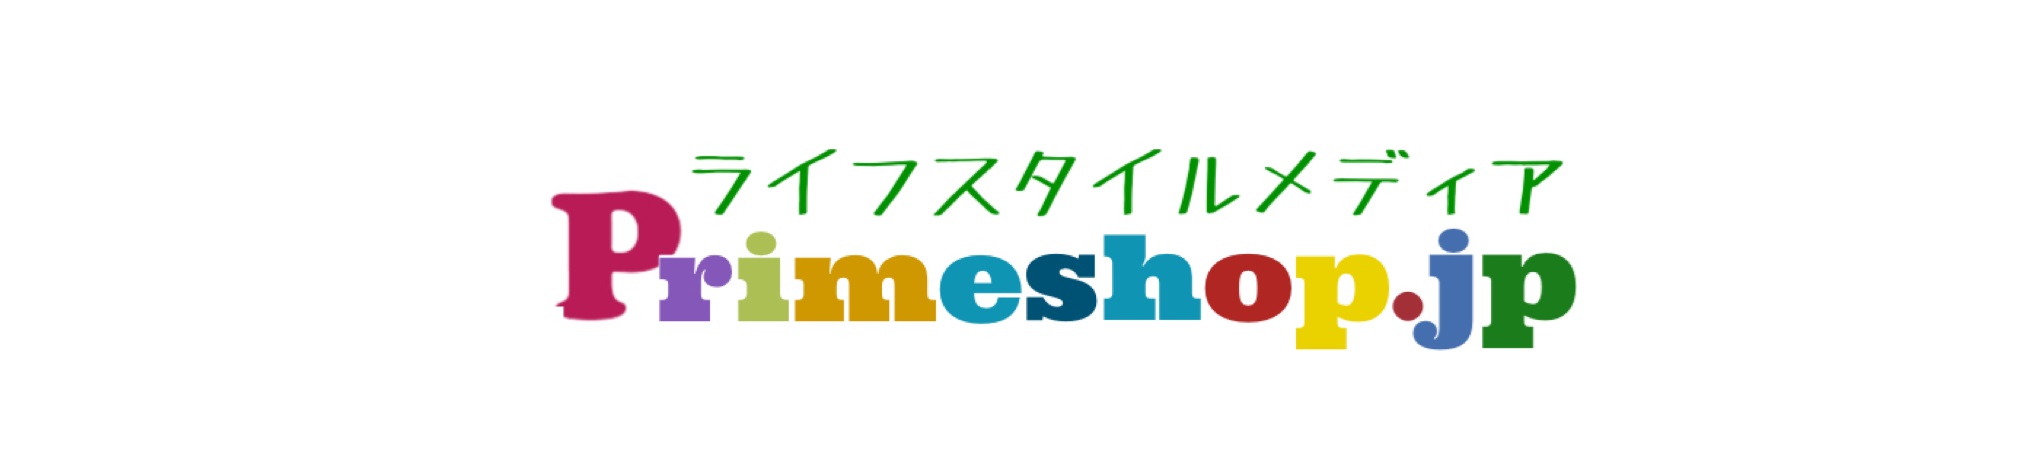 Primeshop-jp bannière